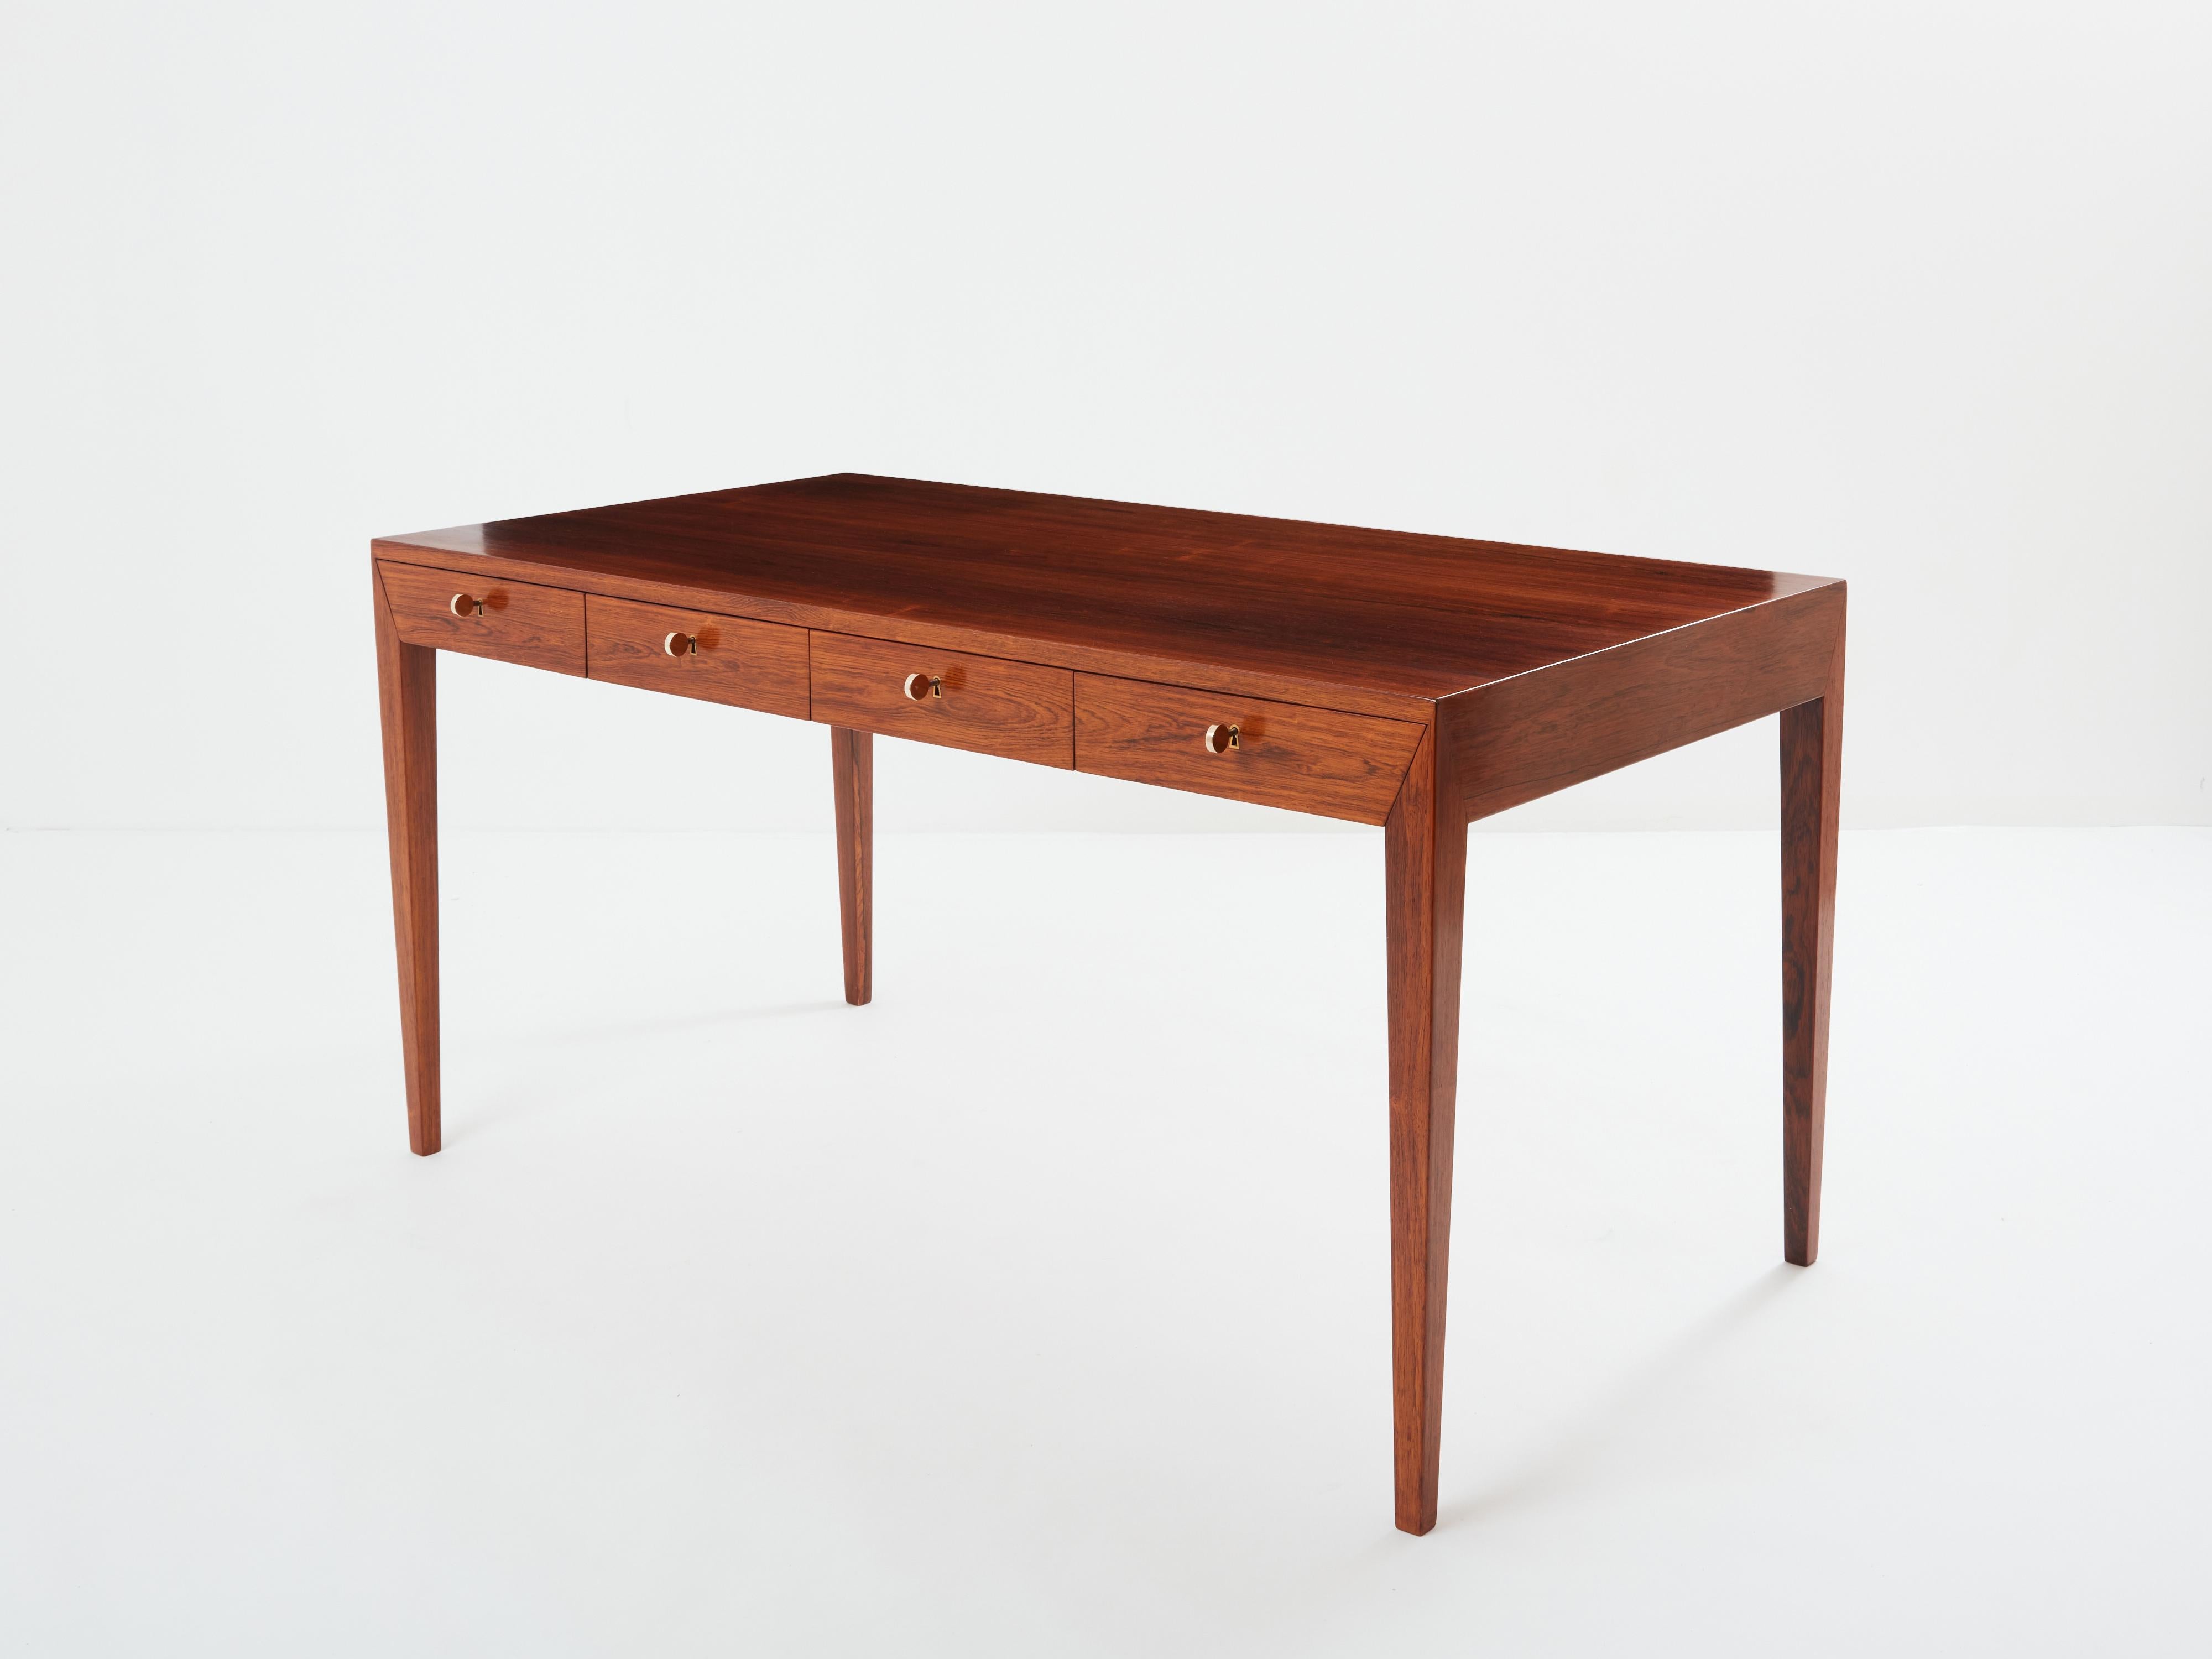 Dies ist ein schöner Schreibtisch, der von Severin Hansen entworfen und von Haslev in Dänemark in den frühen 1960er Jahren hergestellt wurde. Dieser freistehende Schreibtisch ist neben dem von Bodil Kjaer einer der ikonischsten Schreibtische der